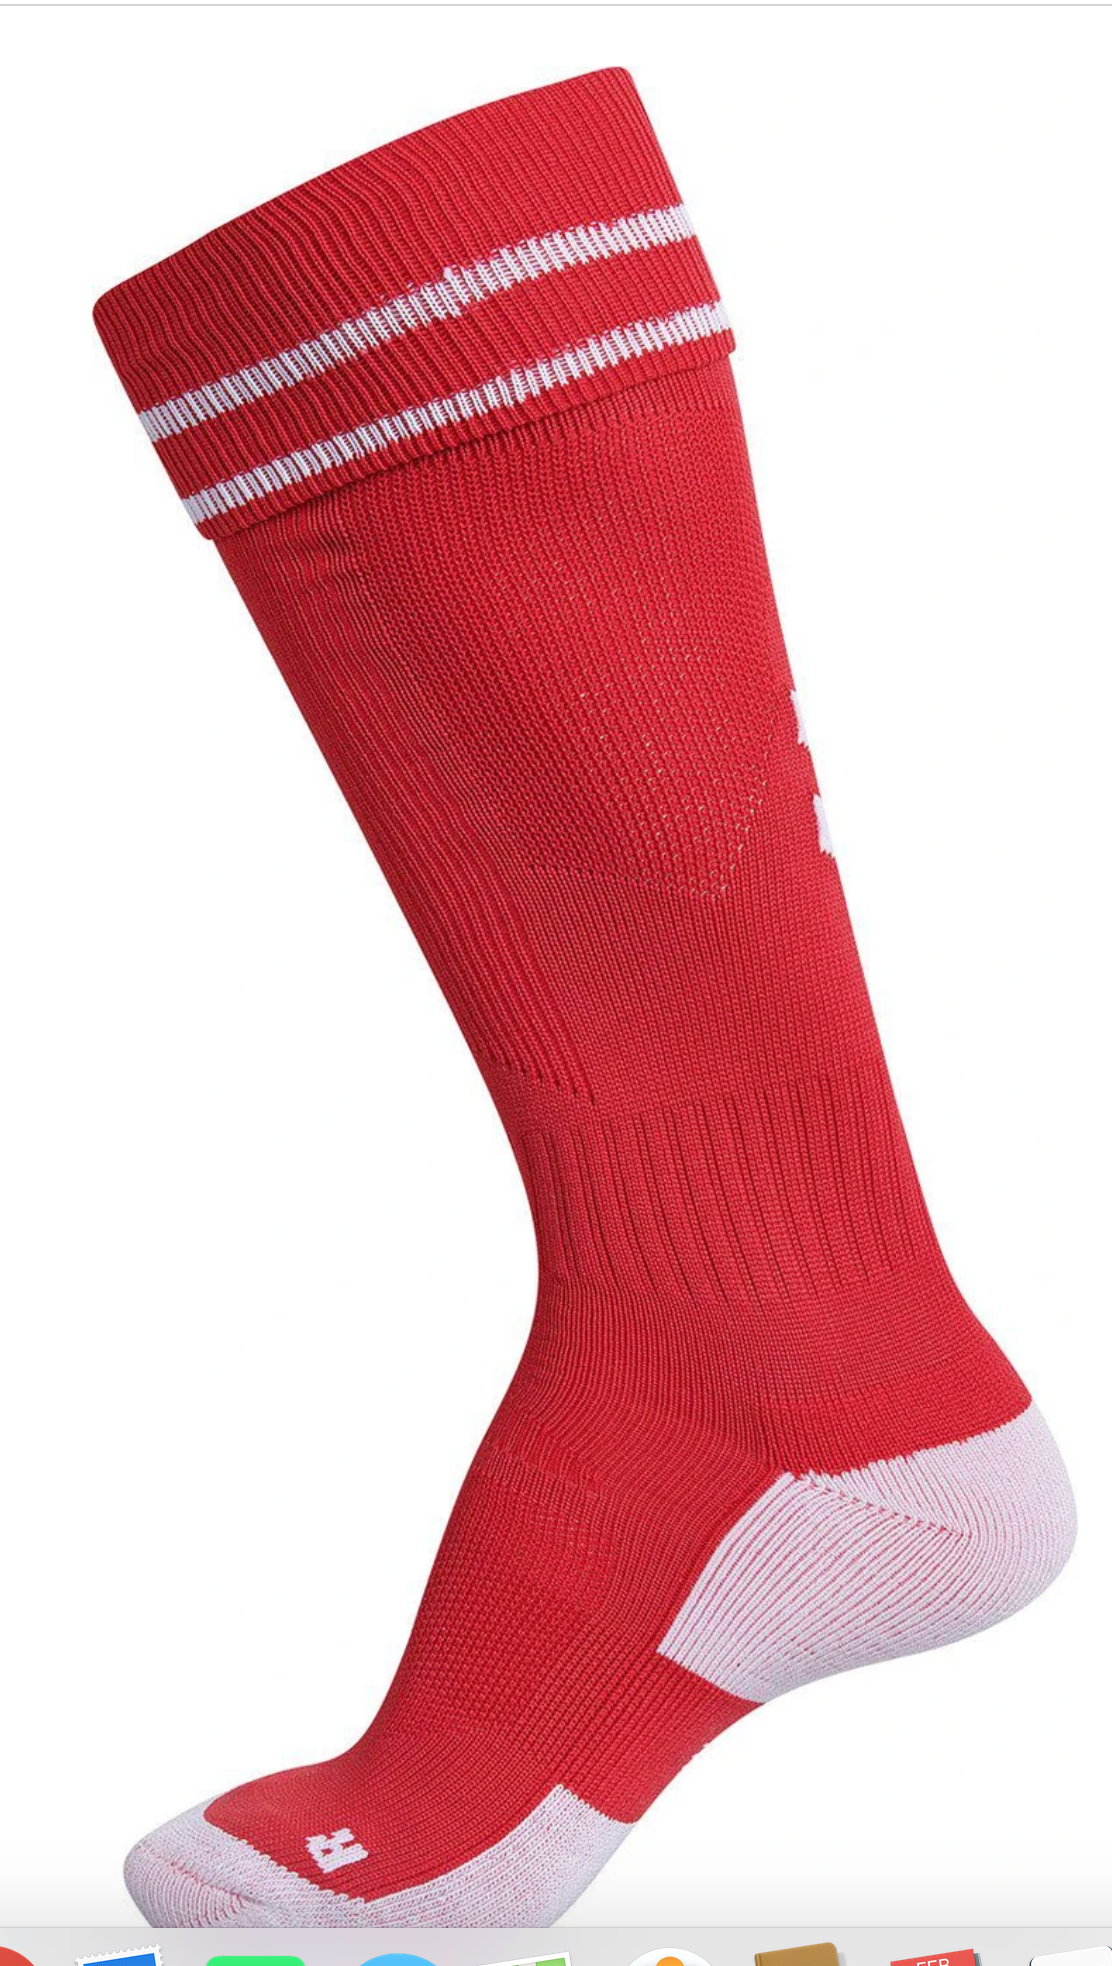 Hummel Element Soccer Socks-Red/White